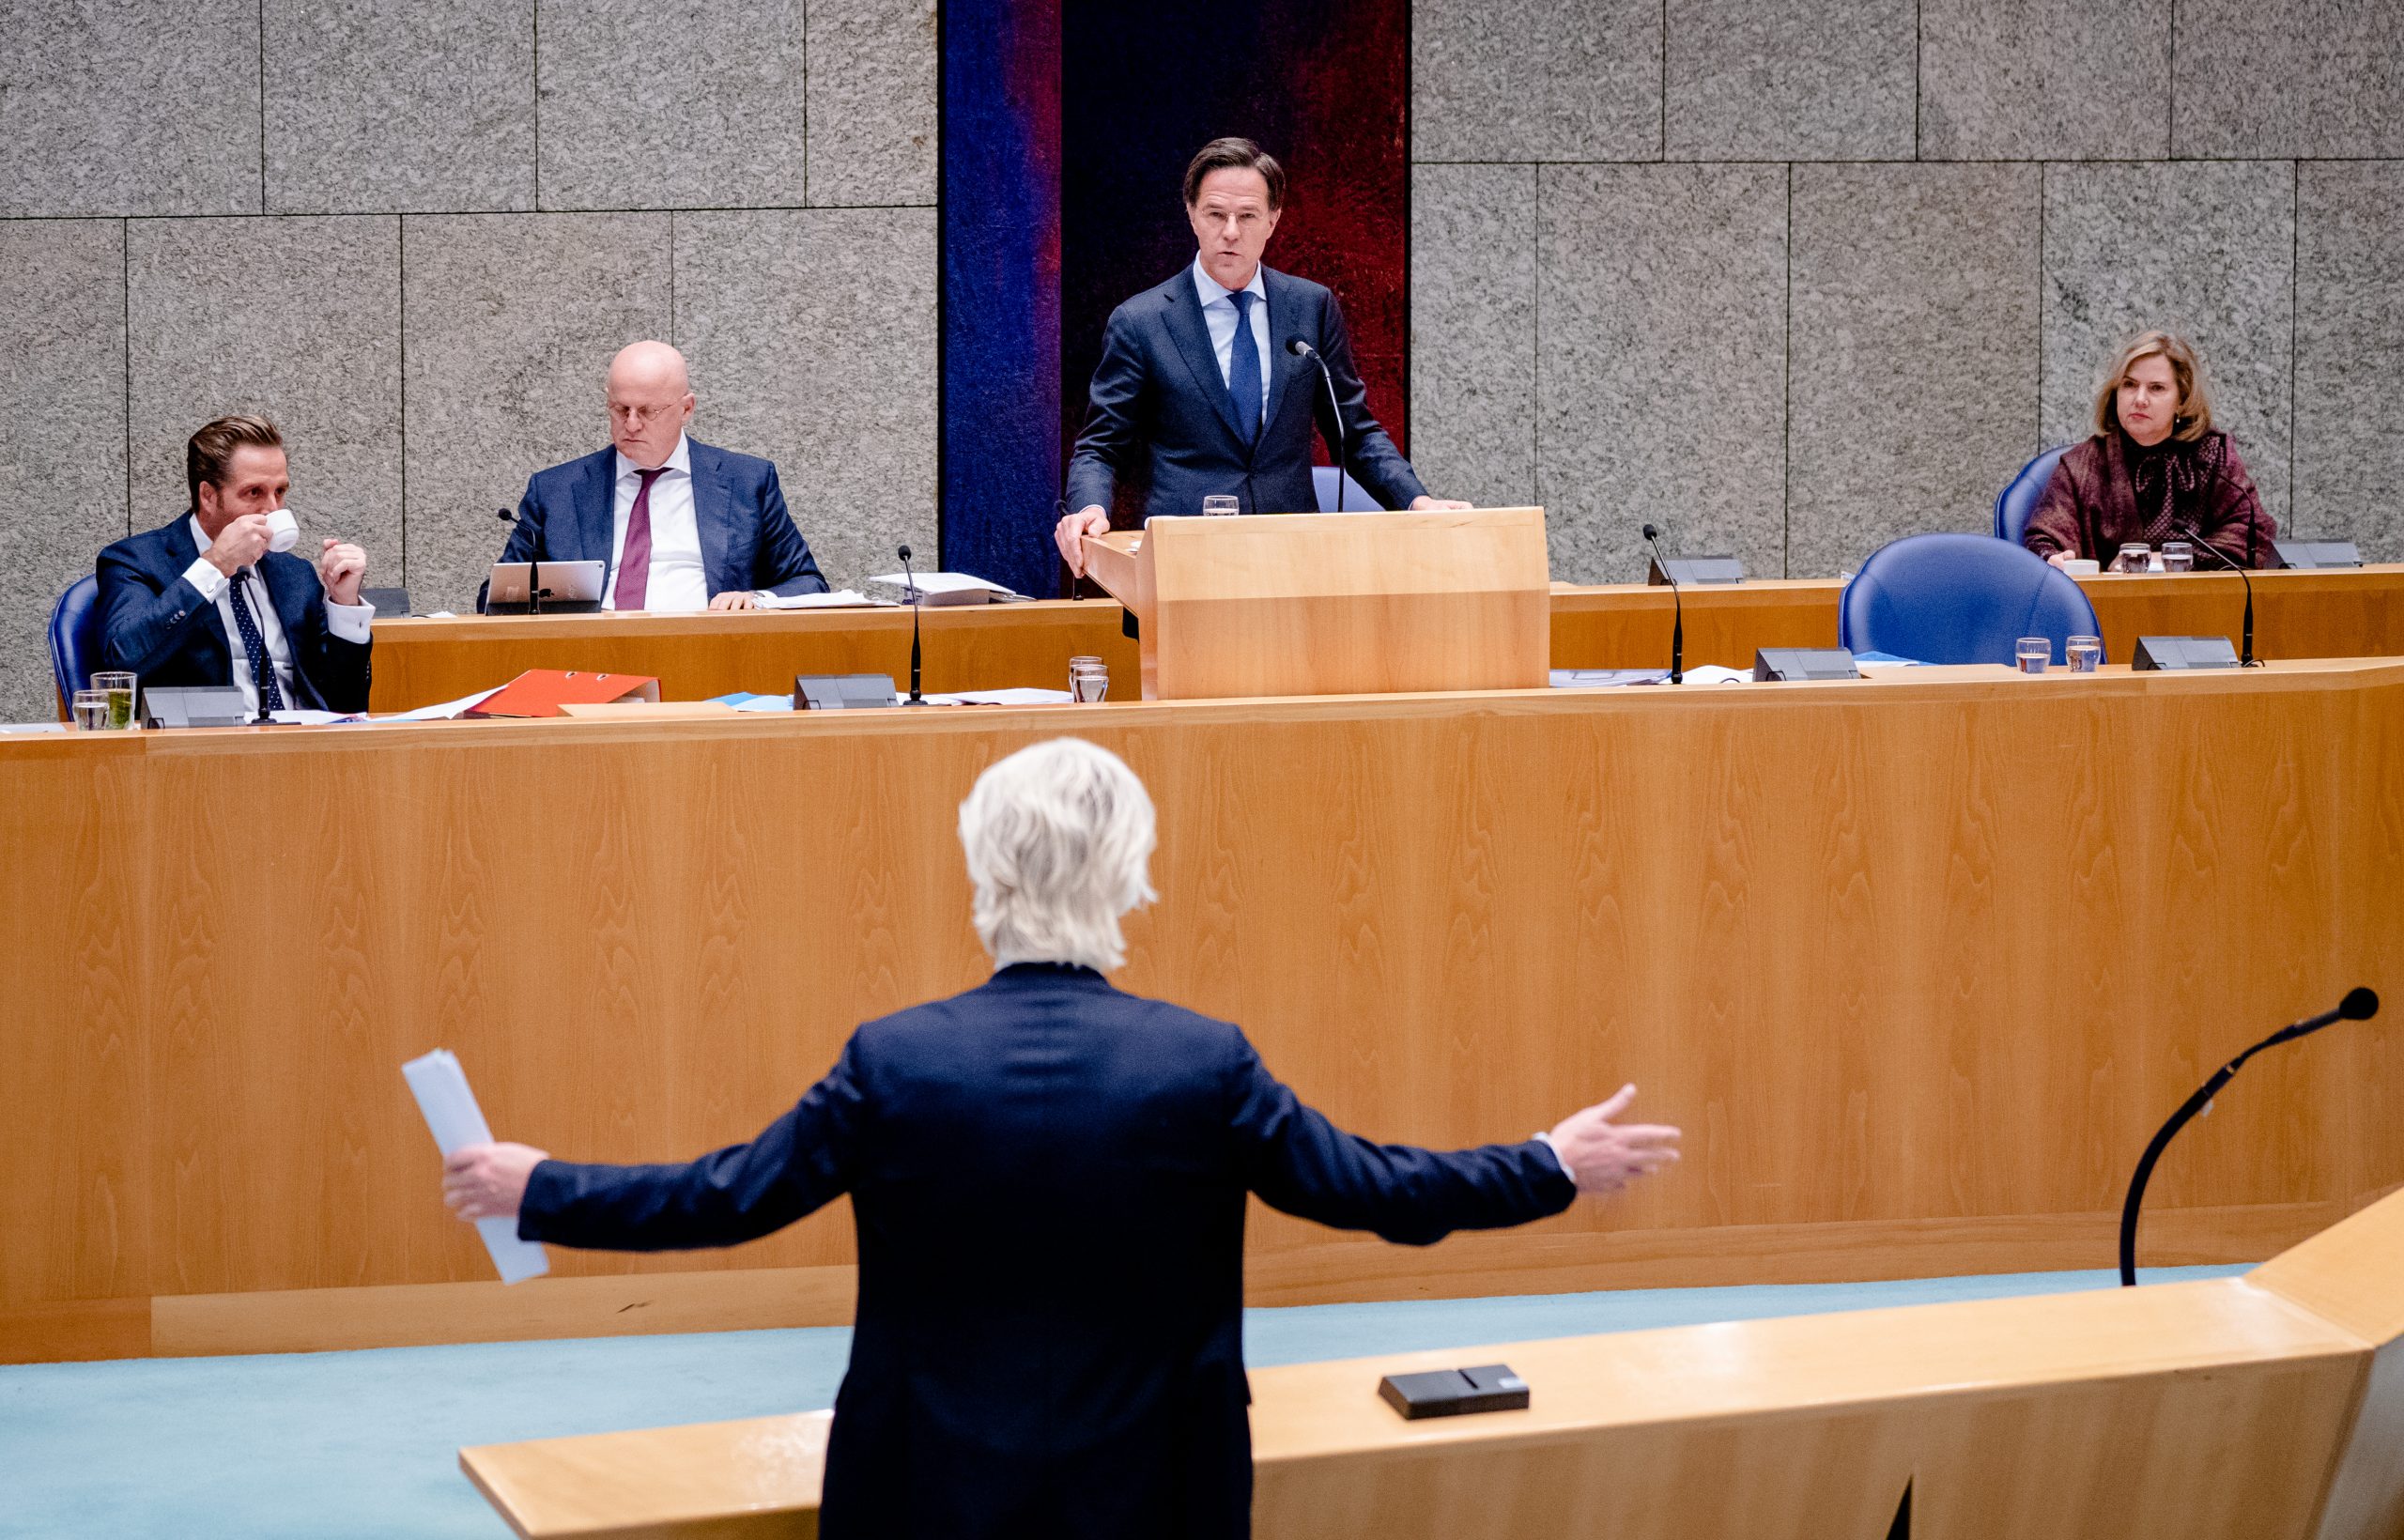 Minister Ferdinand Grapperhaus van Justitie en Veiligheid (CDA), Minister Hugo de Jonge van Volksgezondheid, Welzijn en Sport (CDA), Minister Cora van Nieuwenhuizen van Infrastructuur en Waterstaat (VVD), Premier Mark Rutte en Geert Wilders (PVV) in de Tweede Kamer tijdens het debat over de avondklok.